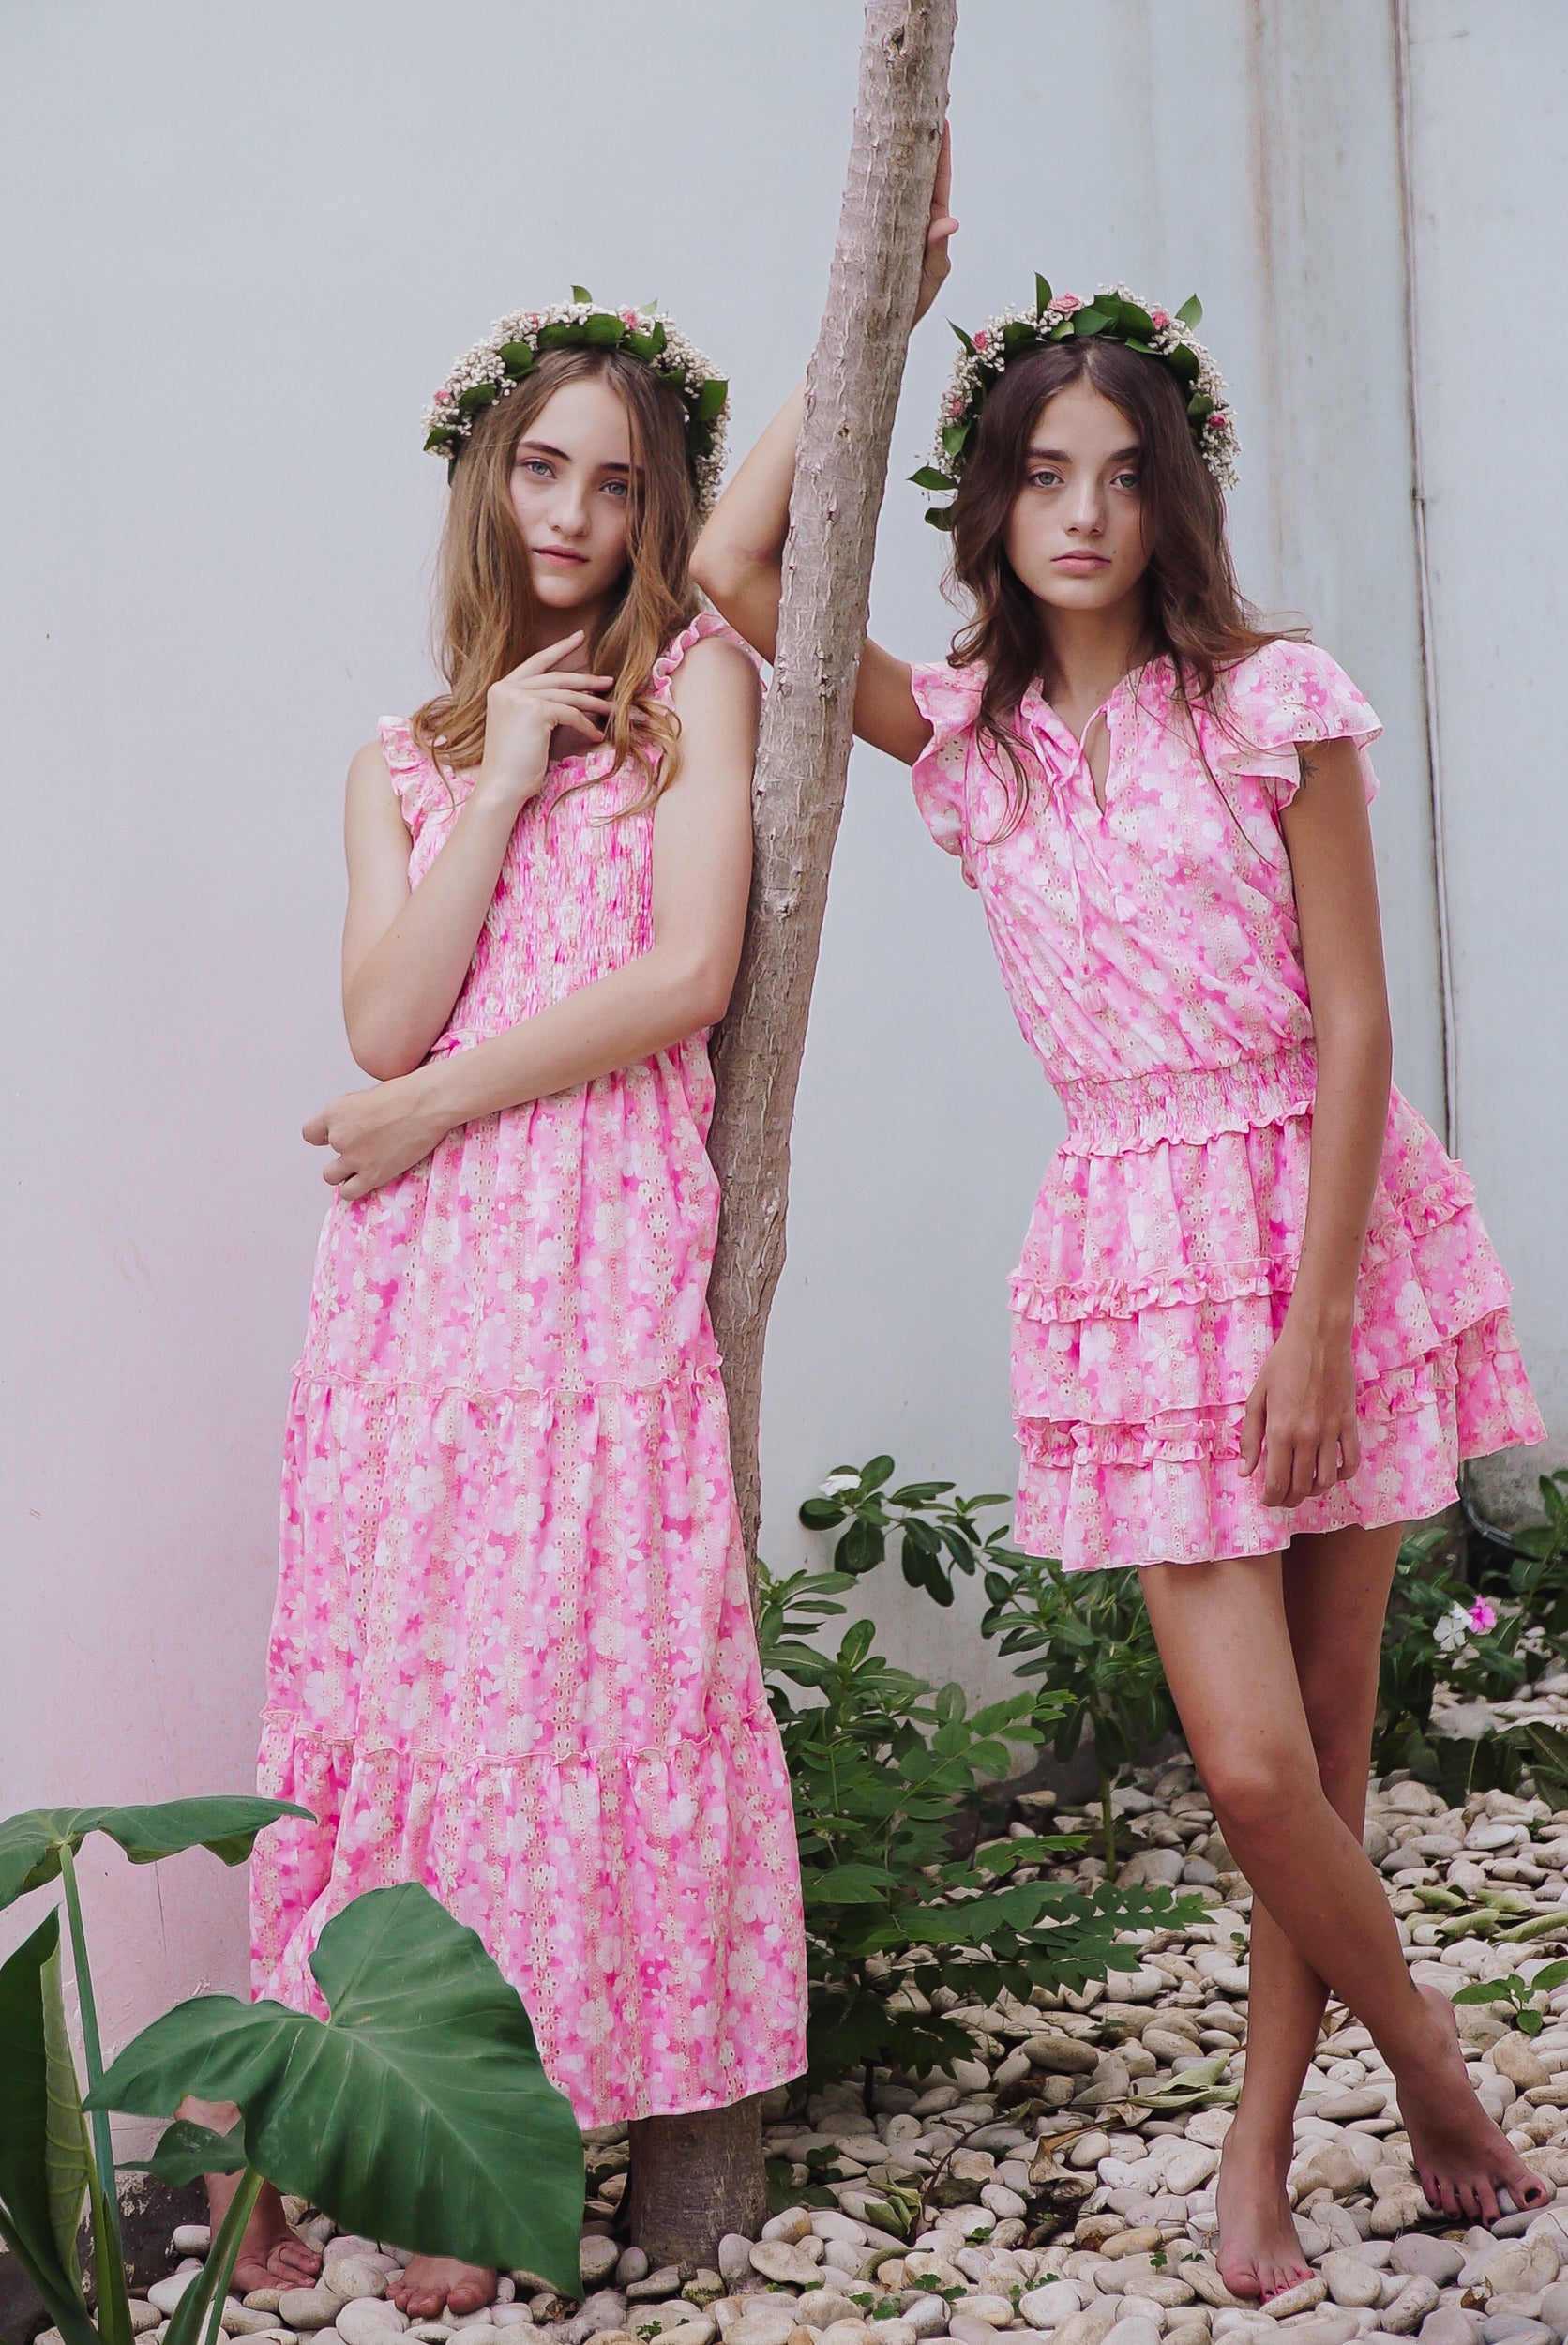 Dolce & Gabbana - Girls Pink Floral Leggings